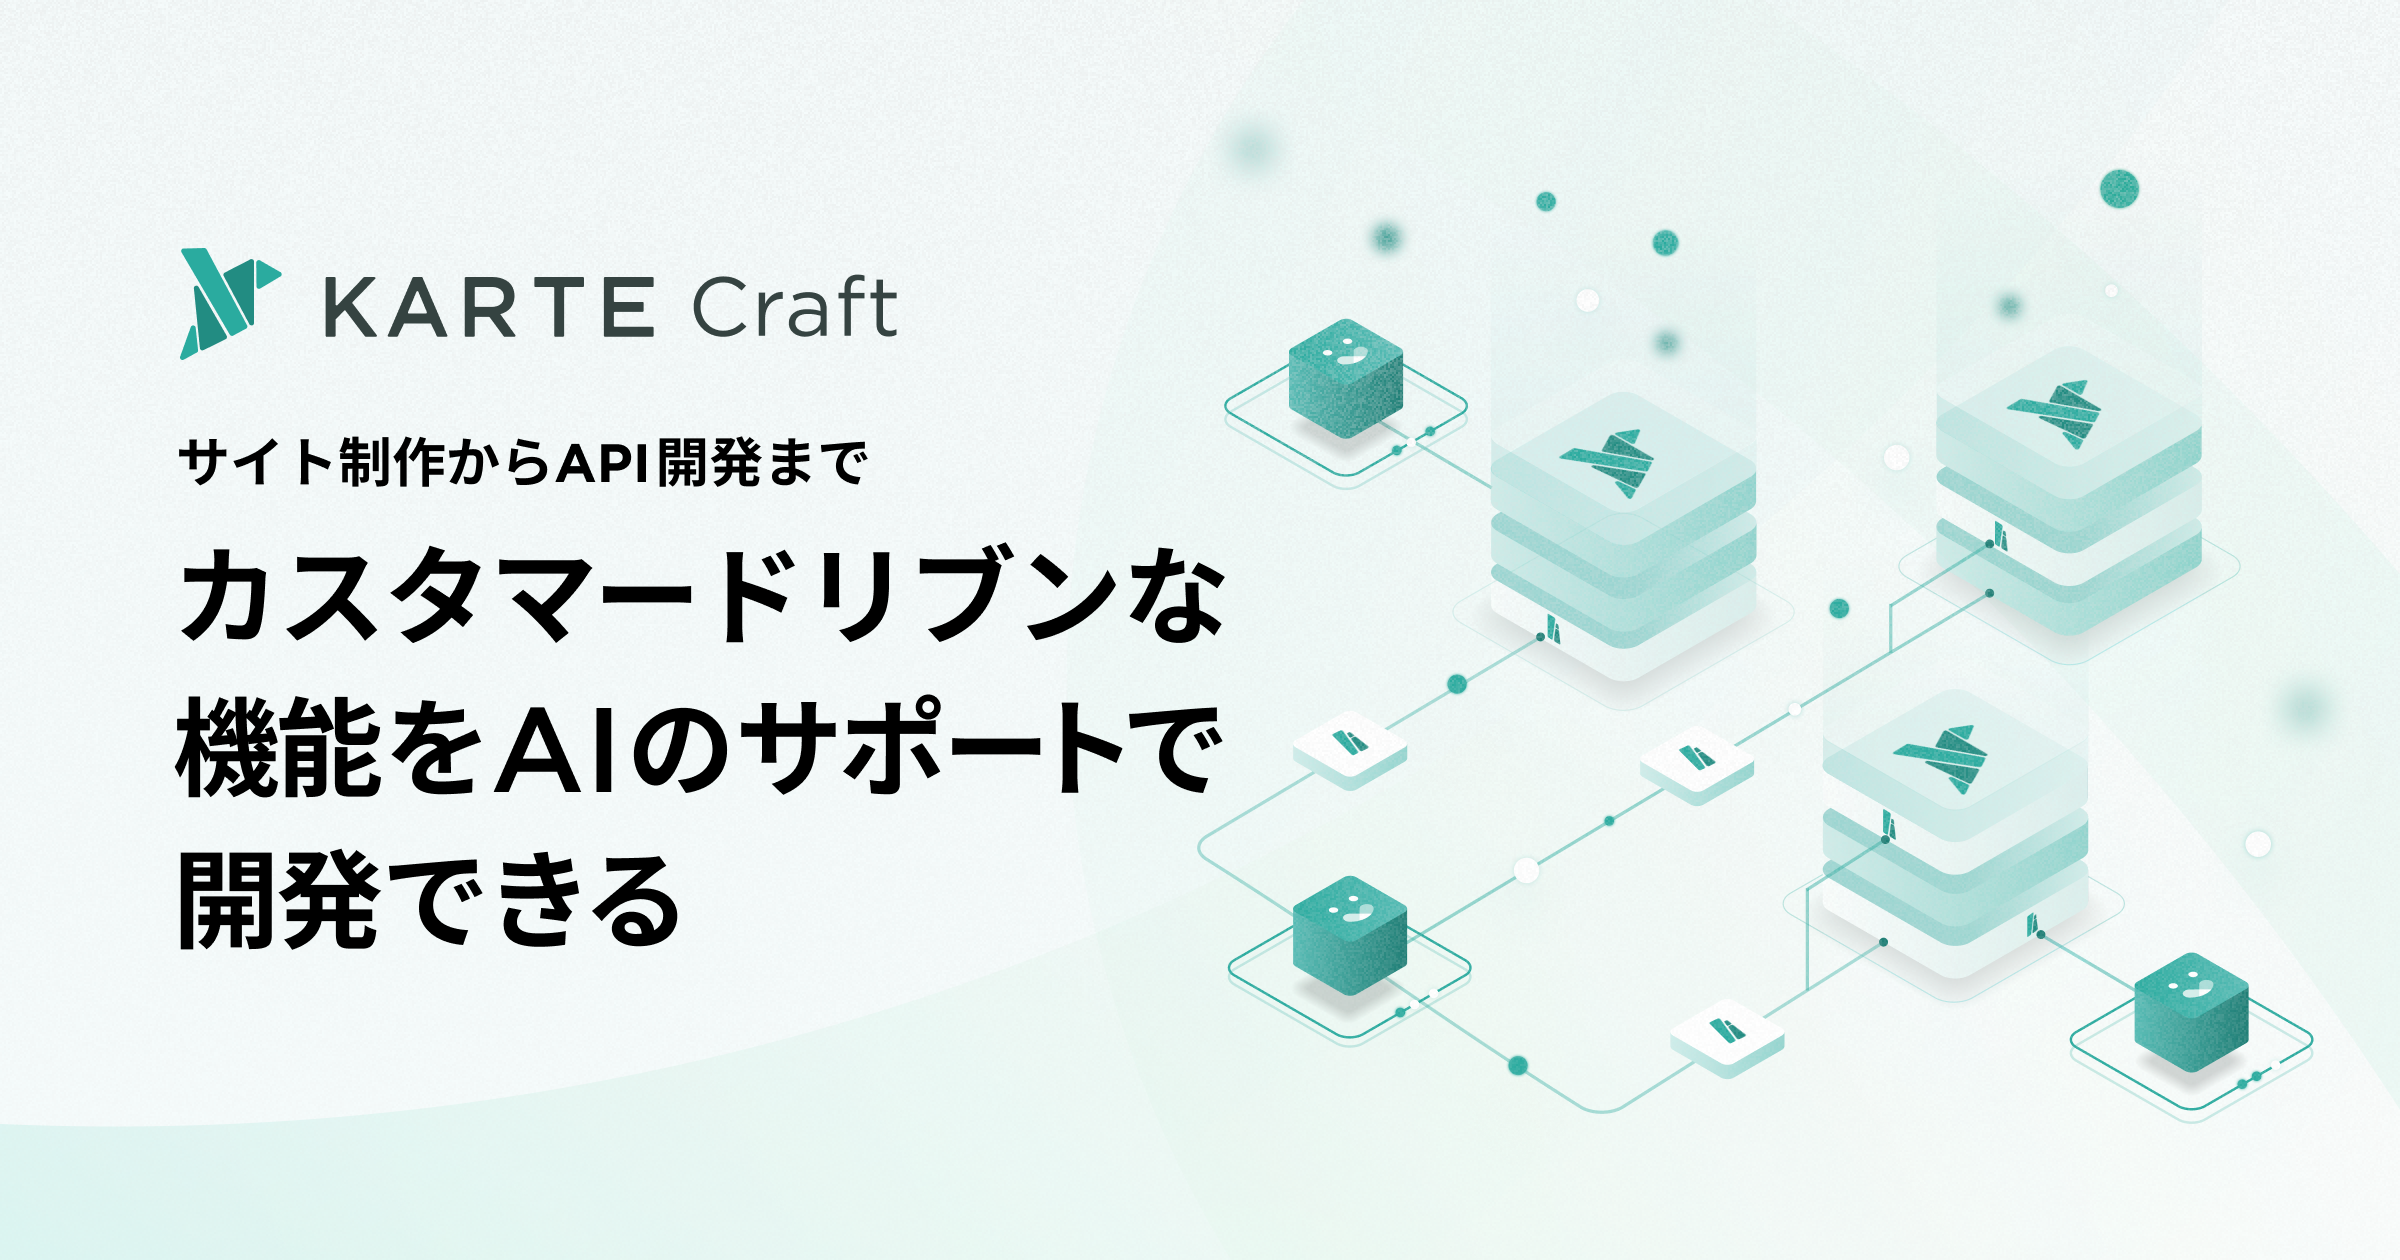 プレイド、サーバーレスでKARTEにほしい機能をAIの支援のもと開発できる「KARTE Craft」の一般提供開始